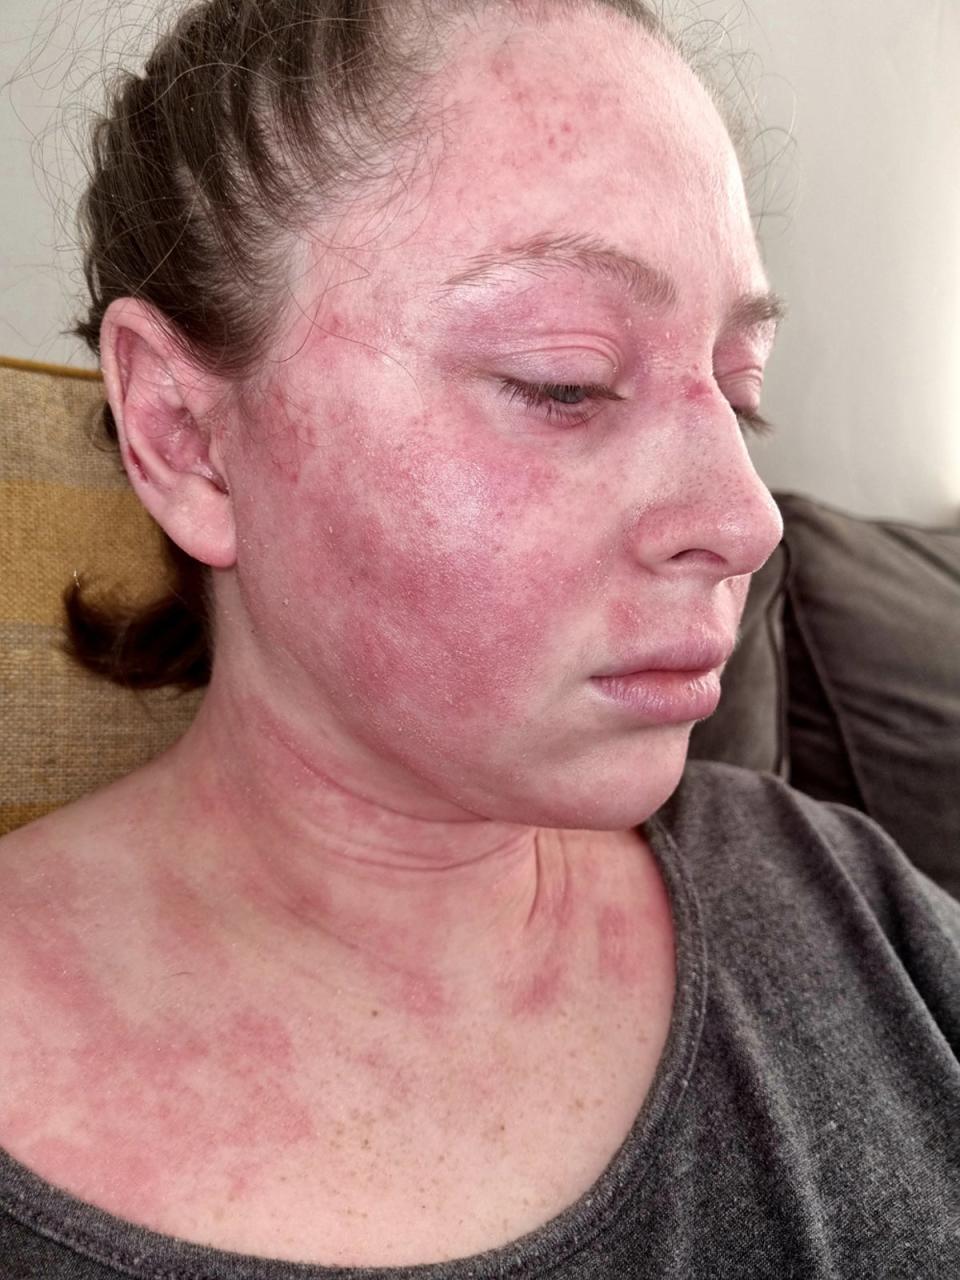 La dermatitis atópica de Kimberley le cubrió la cara y el cuello en marzo de 2020 (Collect/PA Real Life)